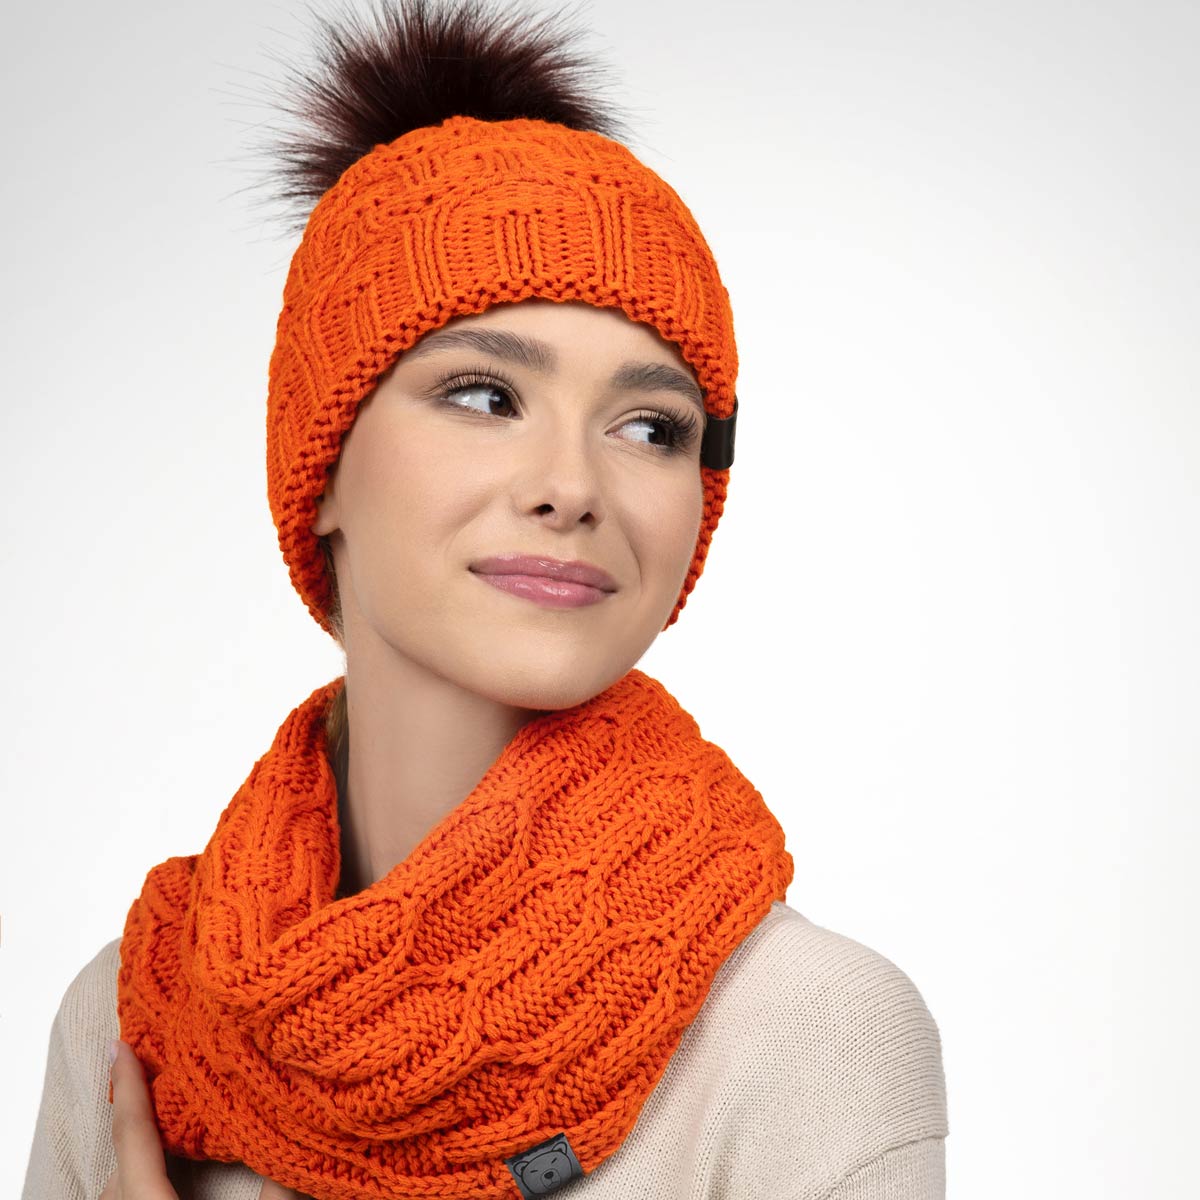 Ensemble-femme-hiver-chaud-couleur-orange--PK-00153_W1-12--